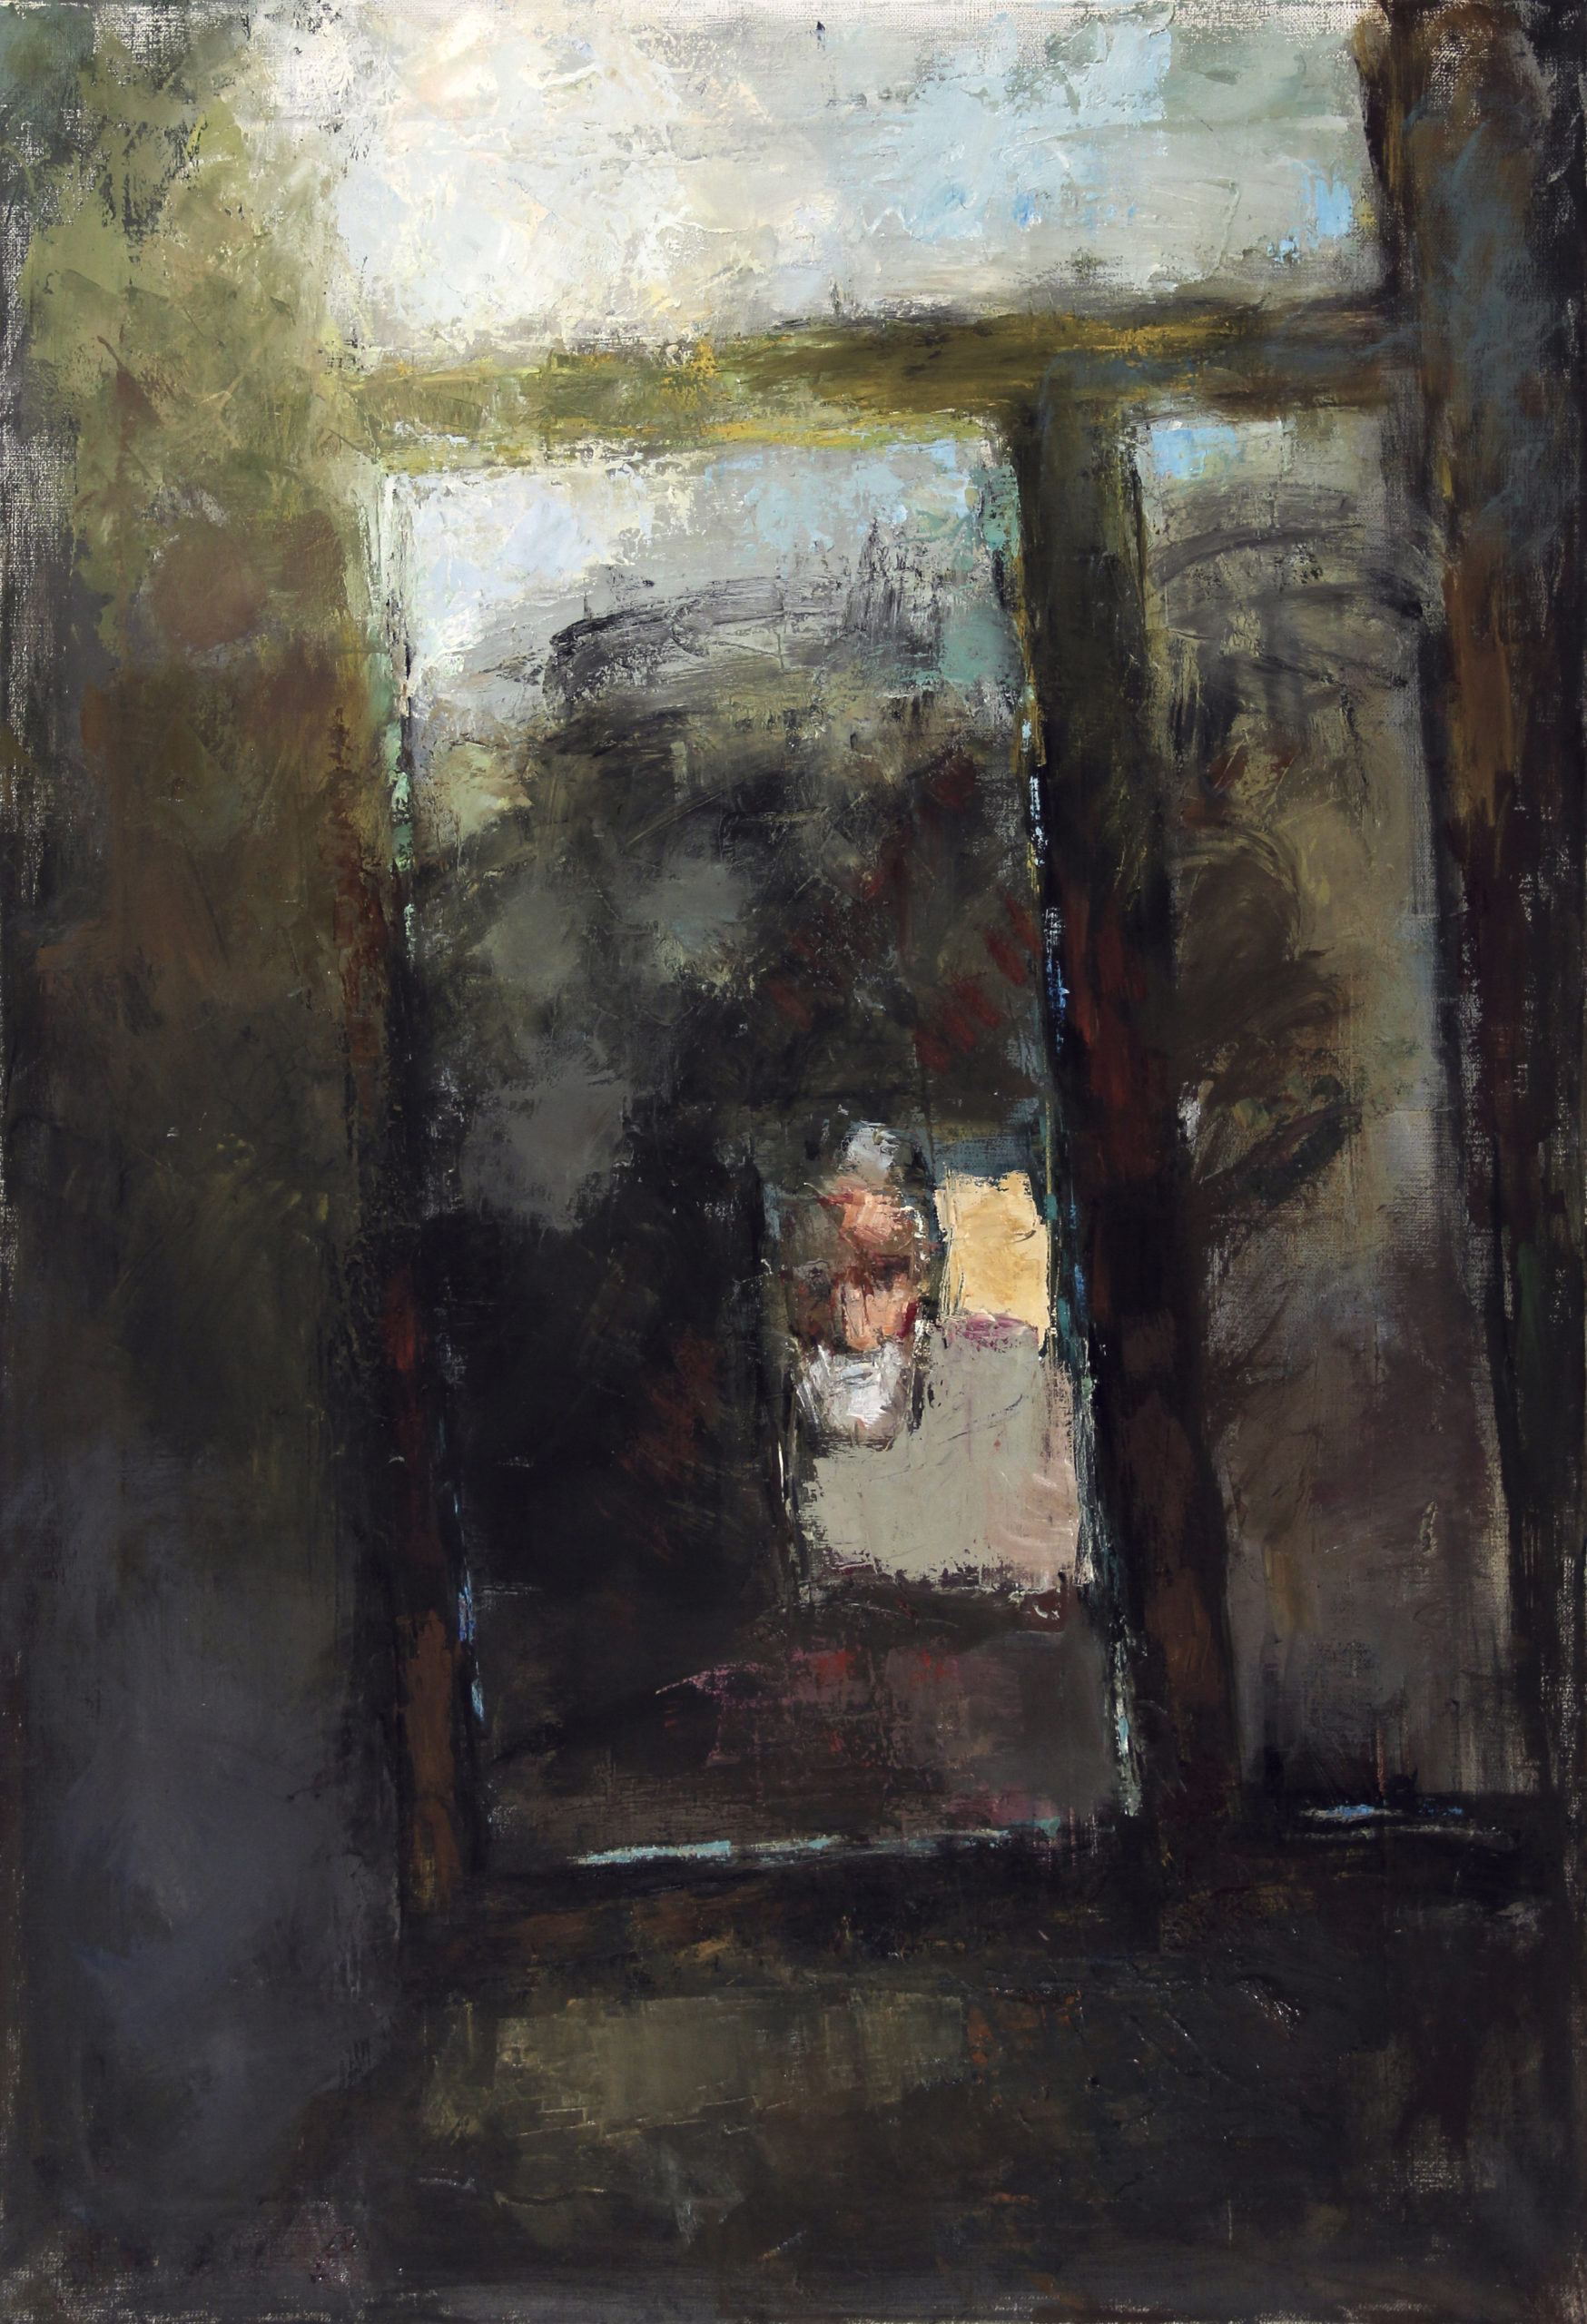 «Отражение в окне. Автопортрет», 2020 год, холст/масло, 95х65, частная коллекция.